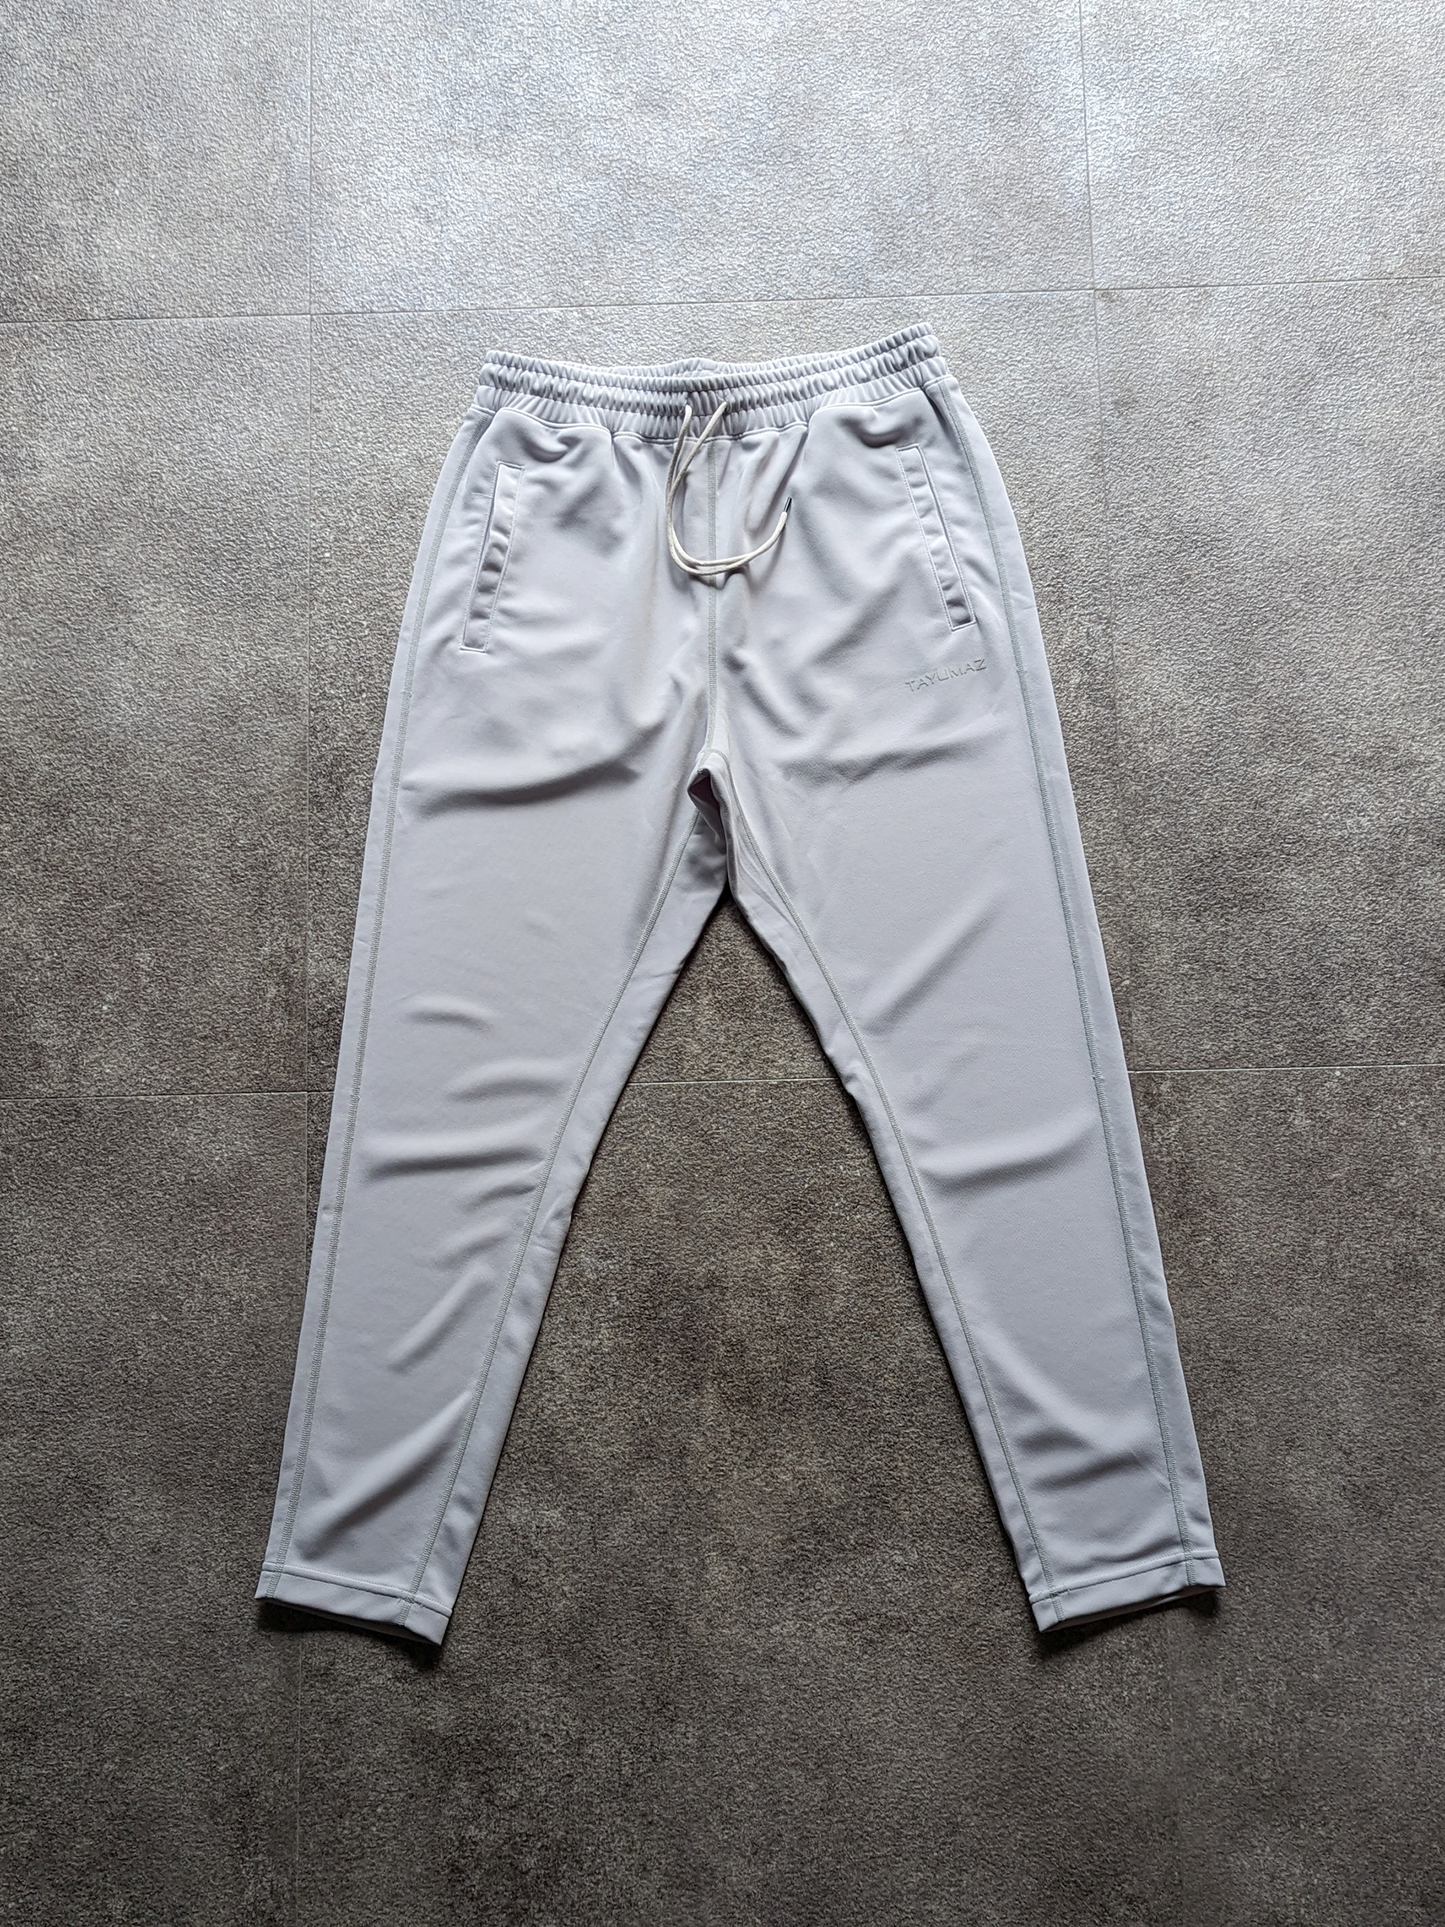 กางเกงขายาว Dry Suiting สีไอซ์เกรย์ / โลโก้ 3D Silicon สีไอซ์เกรย์